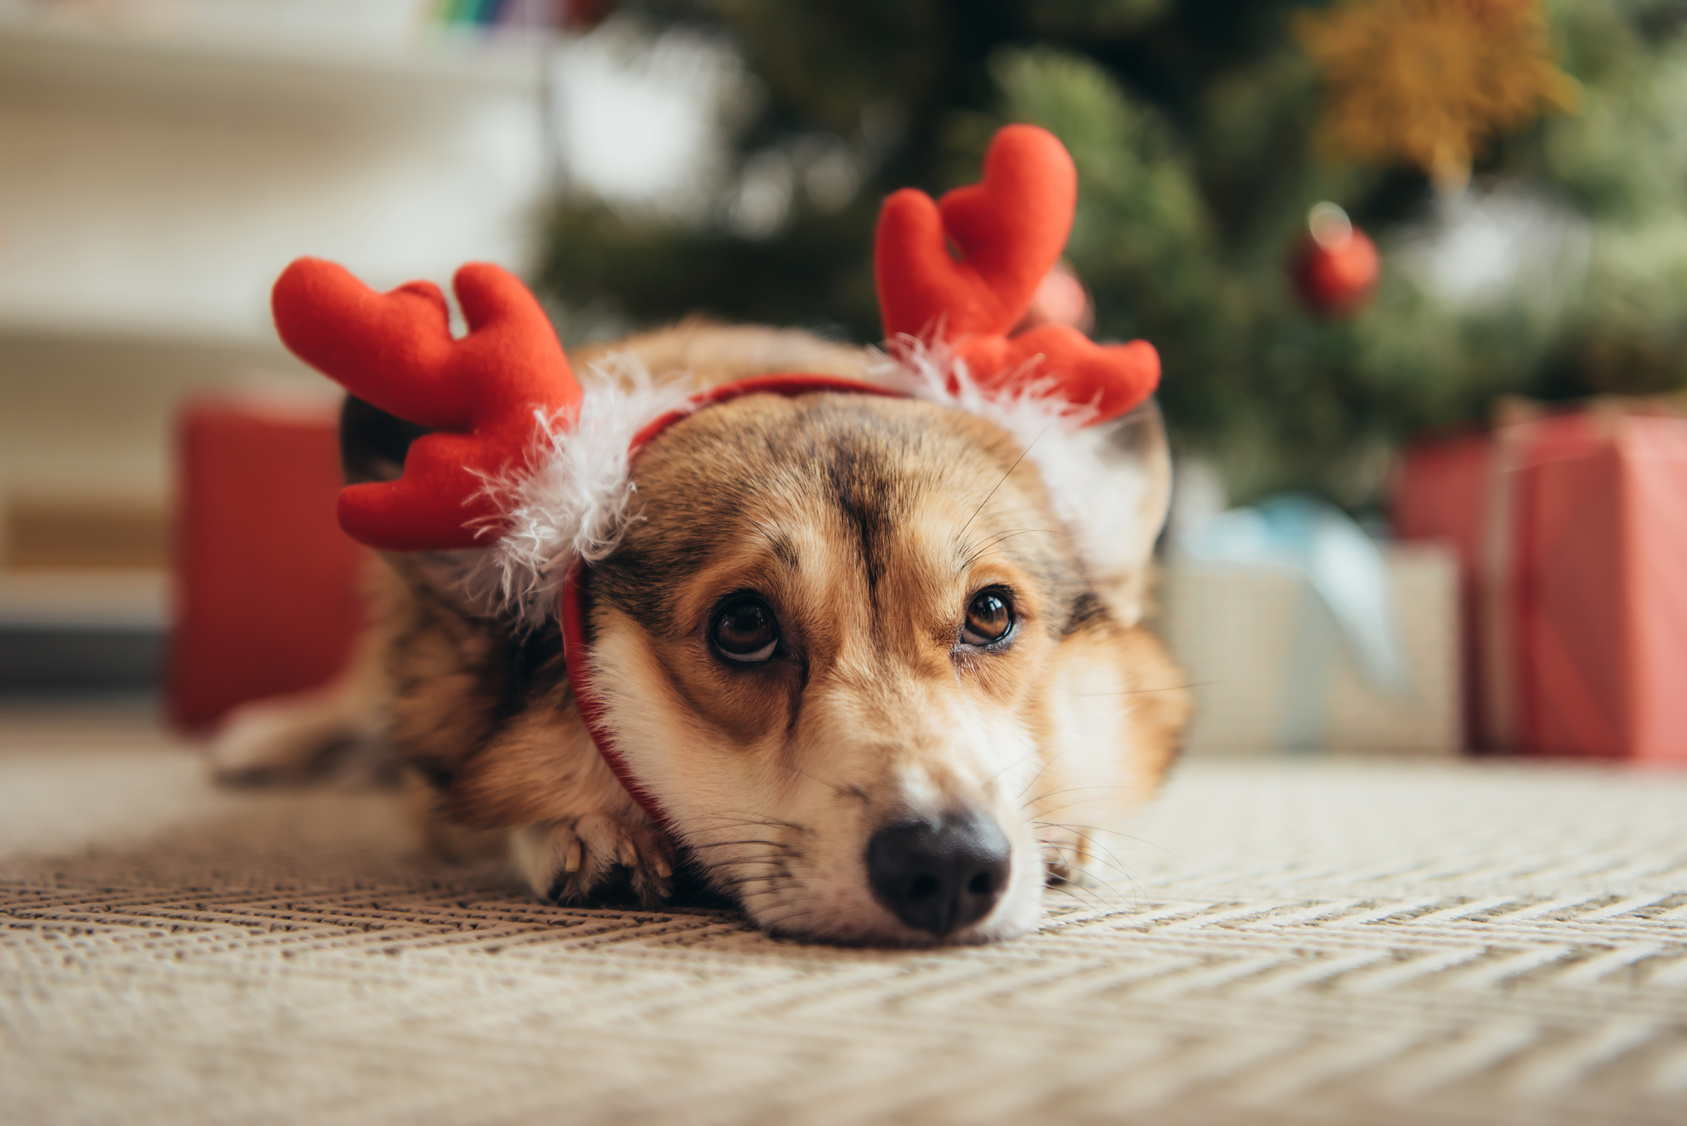 Conseil pour un Noël sans danger avec votre chien | Magazine zooplus